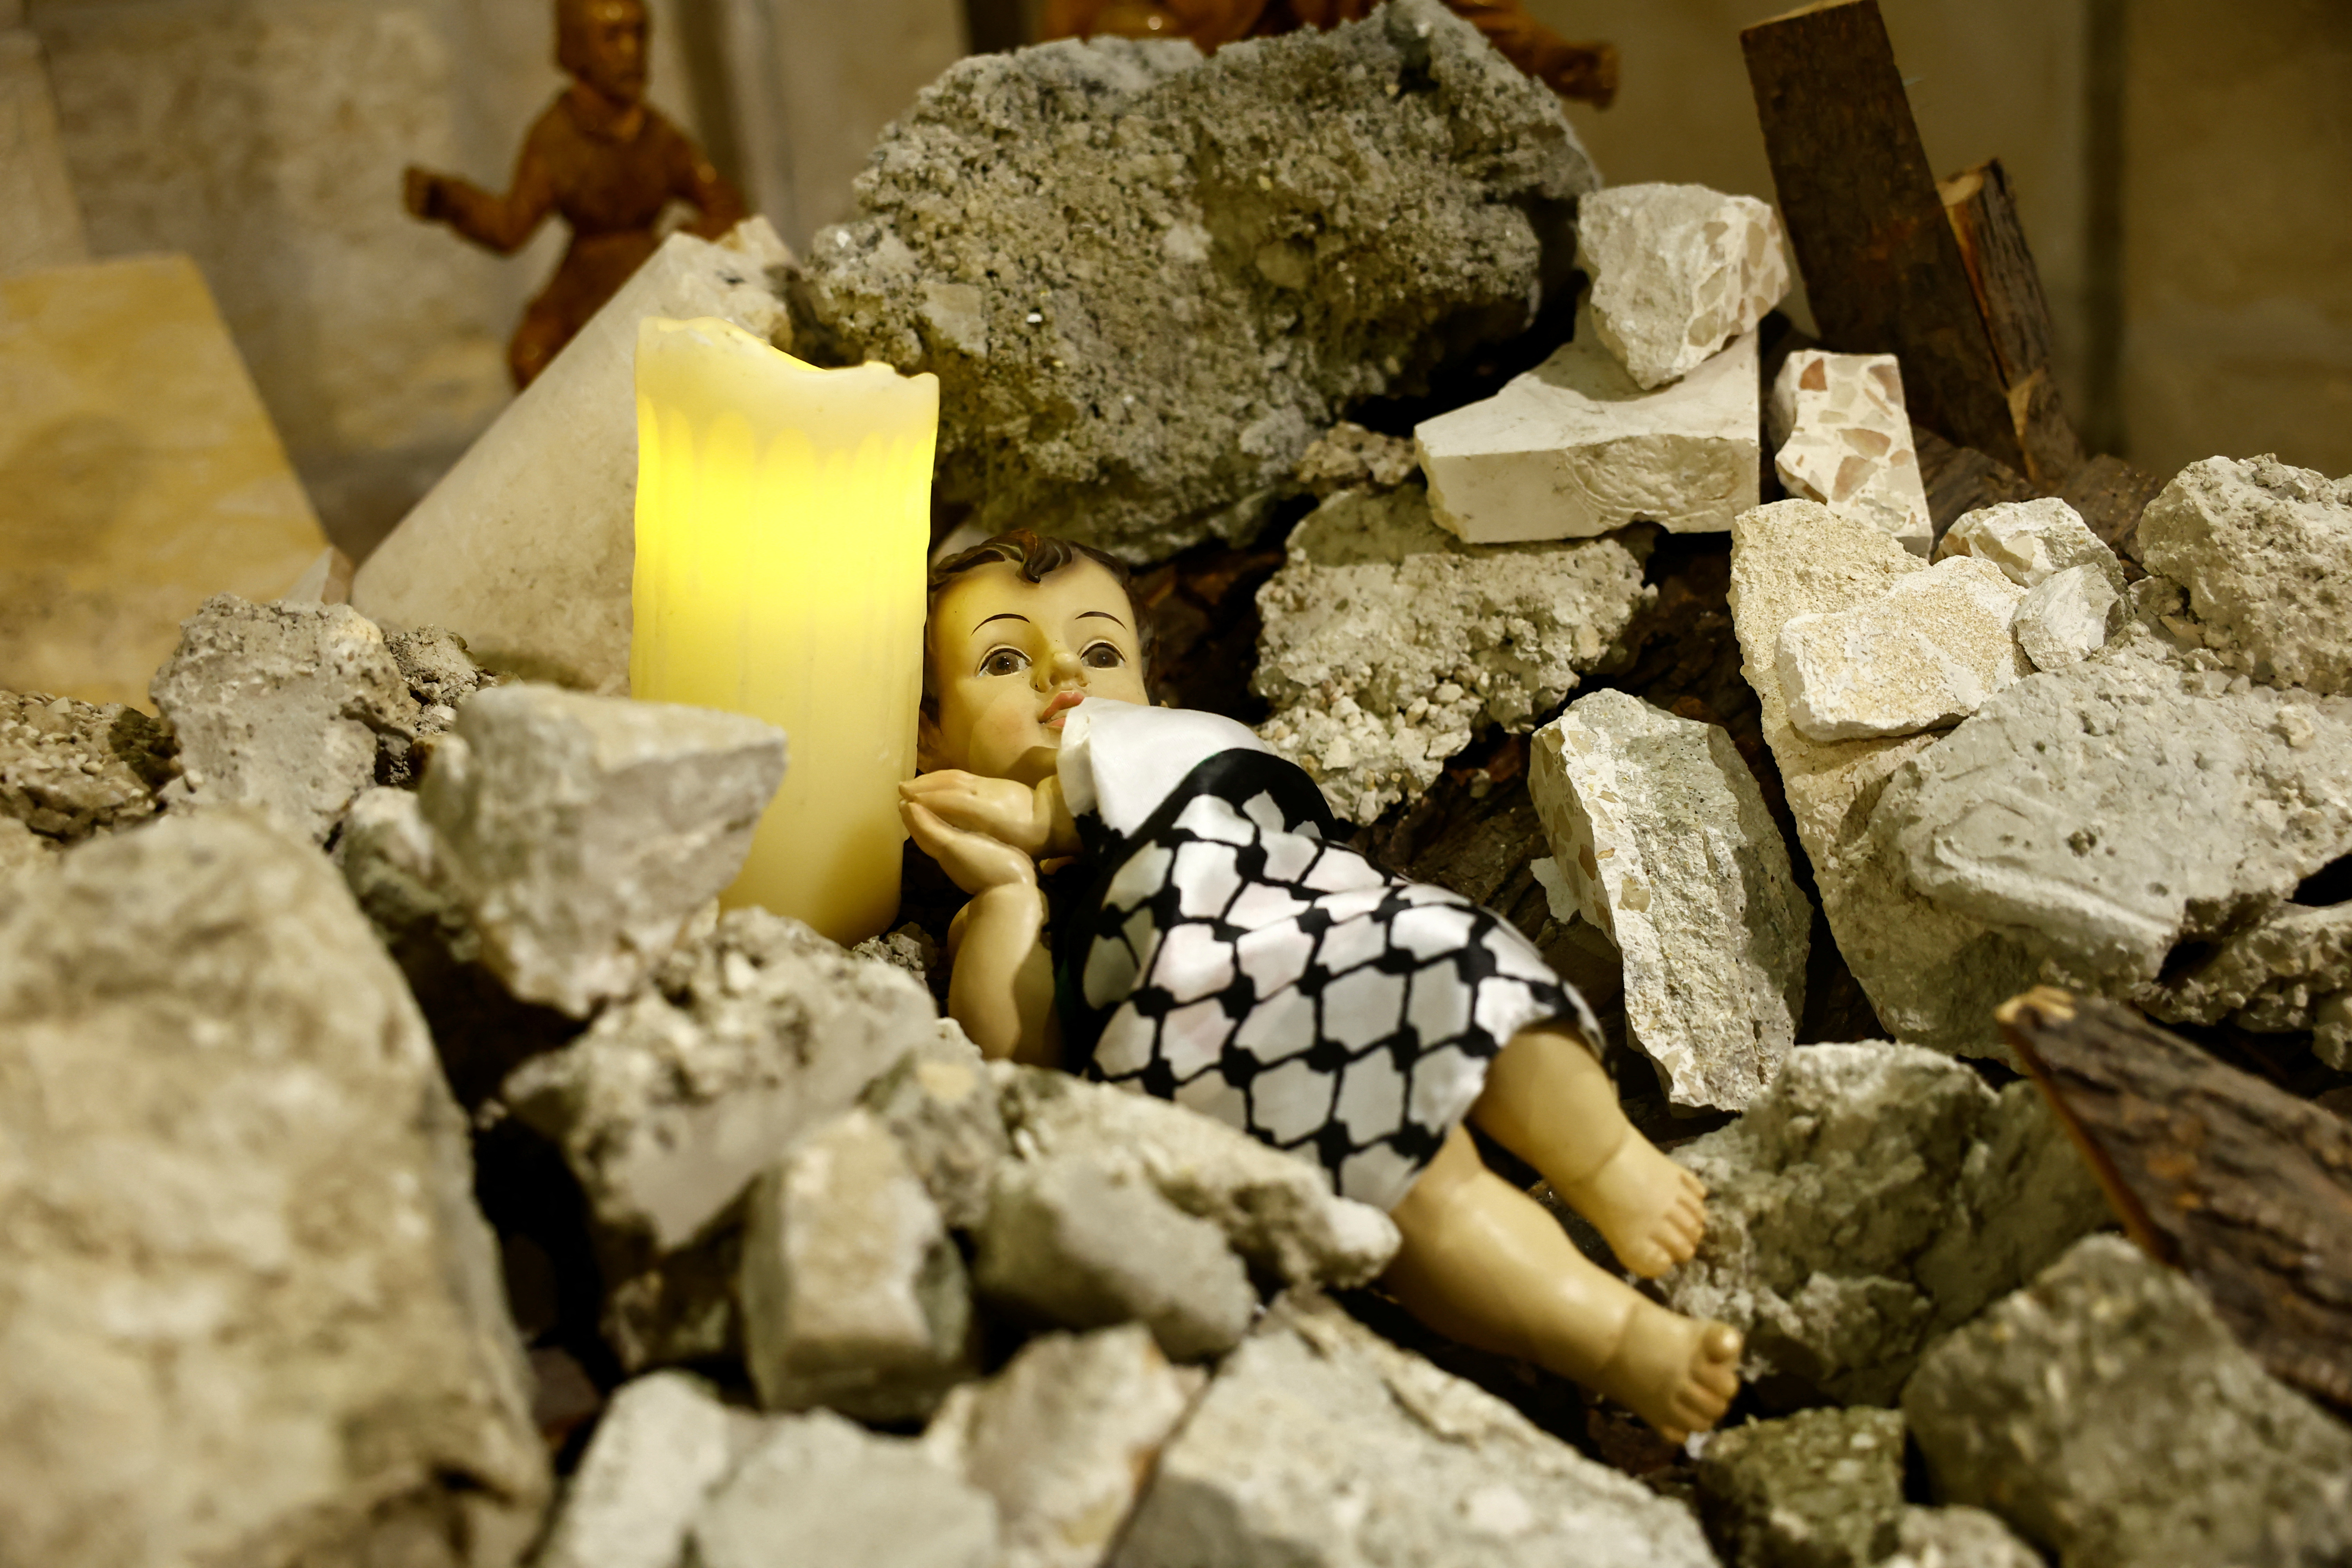 Das Jesuskind liegt inmitten der Trümmer in einer Grotte – anstelle der üblichen Krippendarstellung